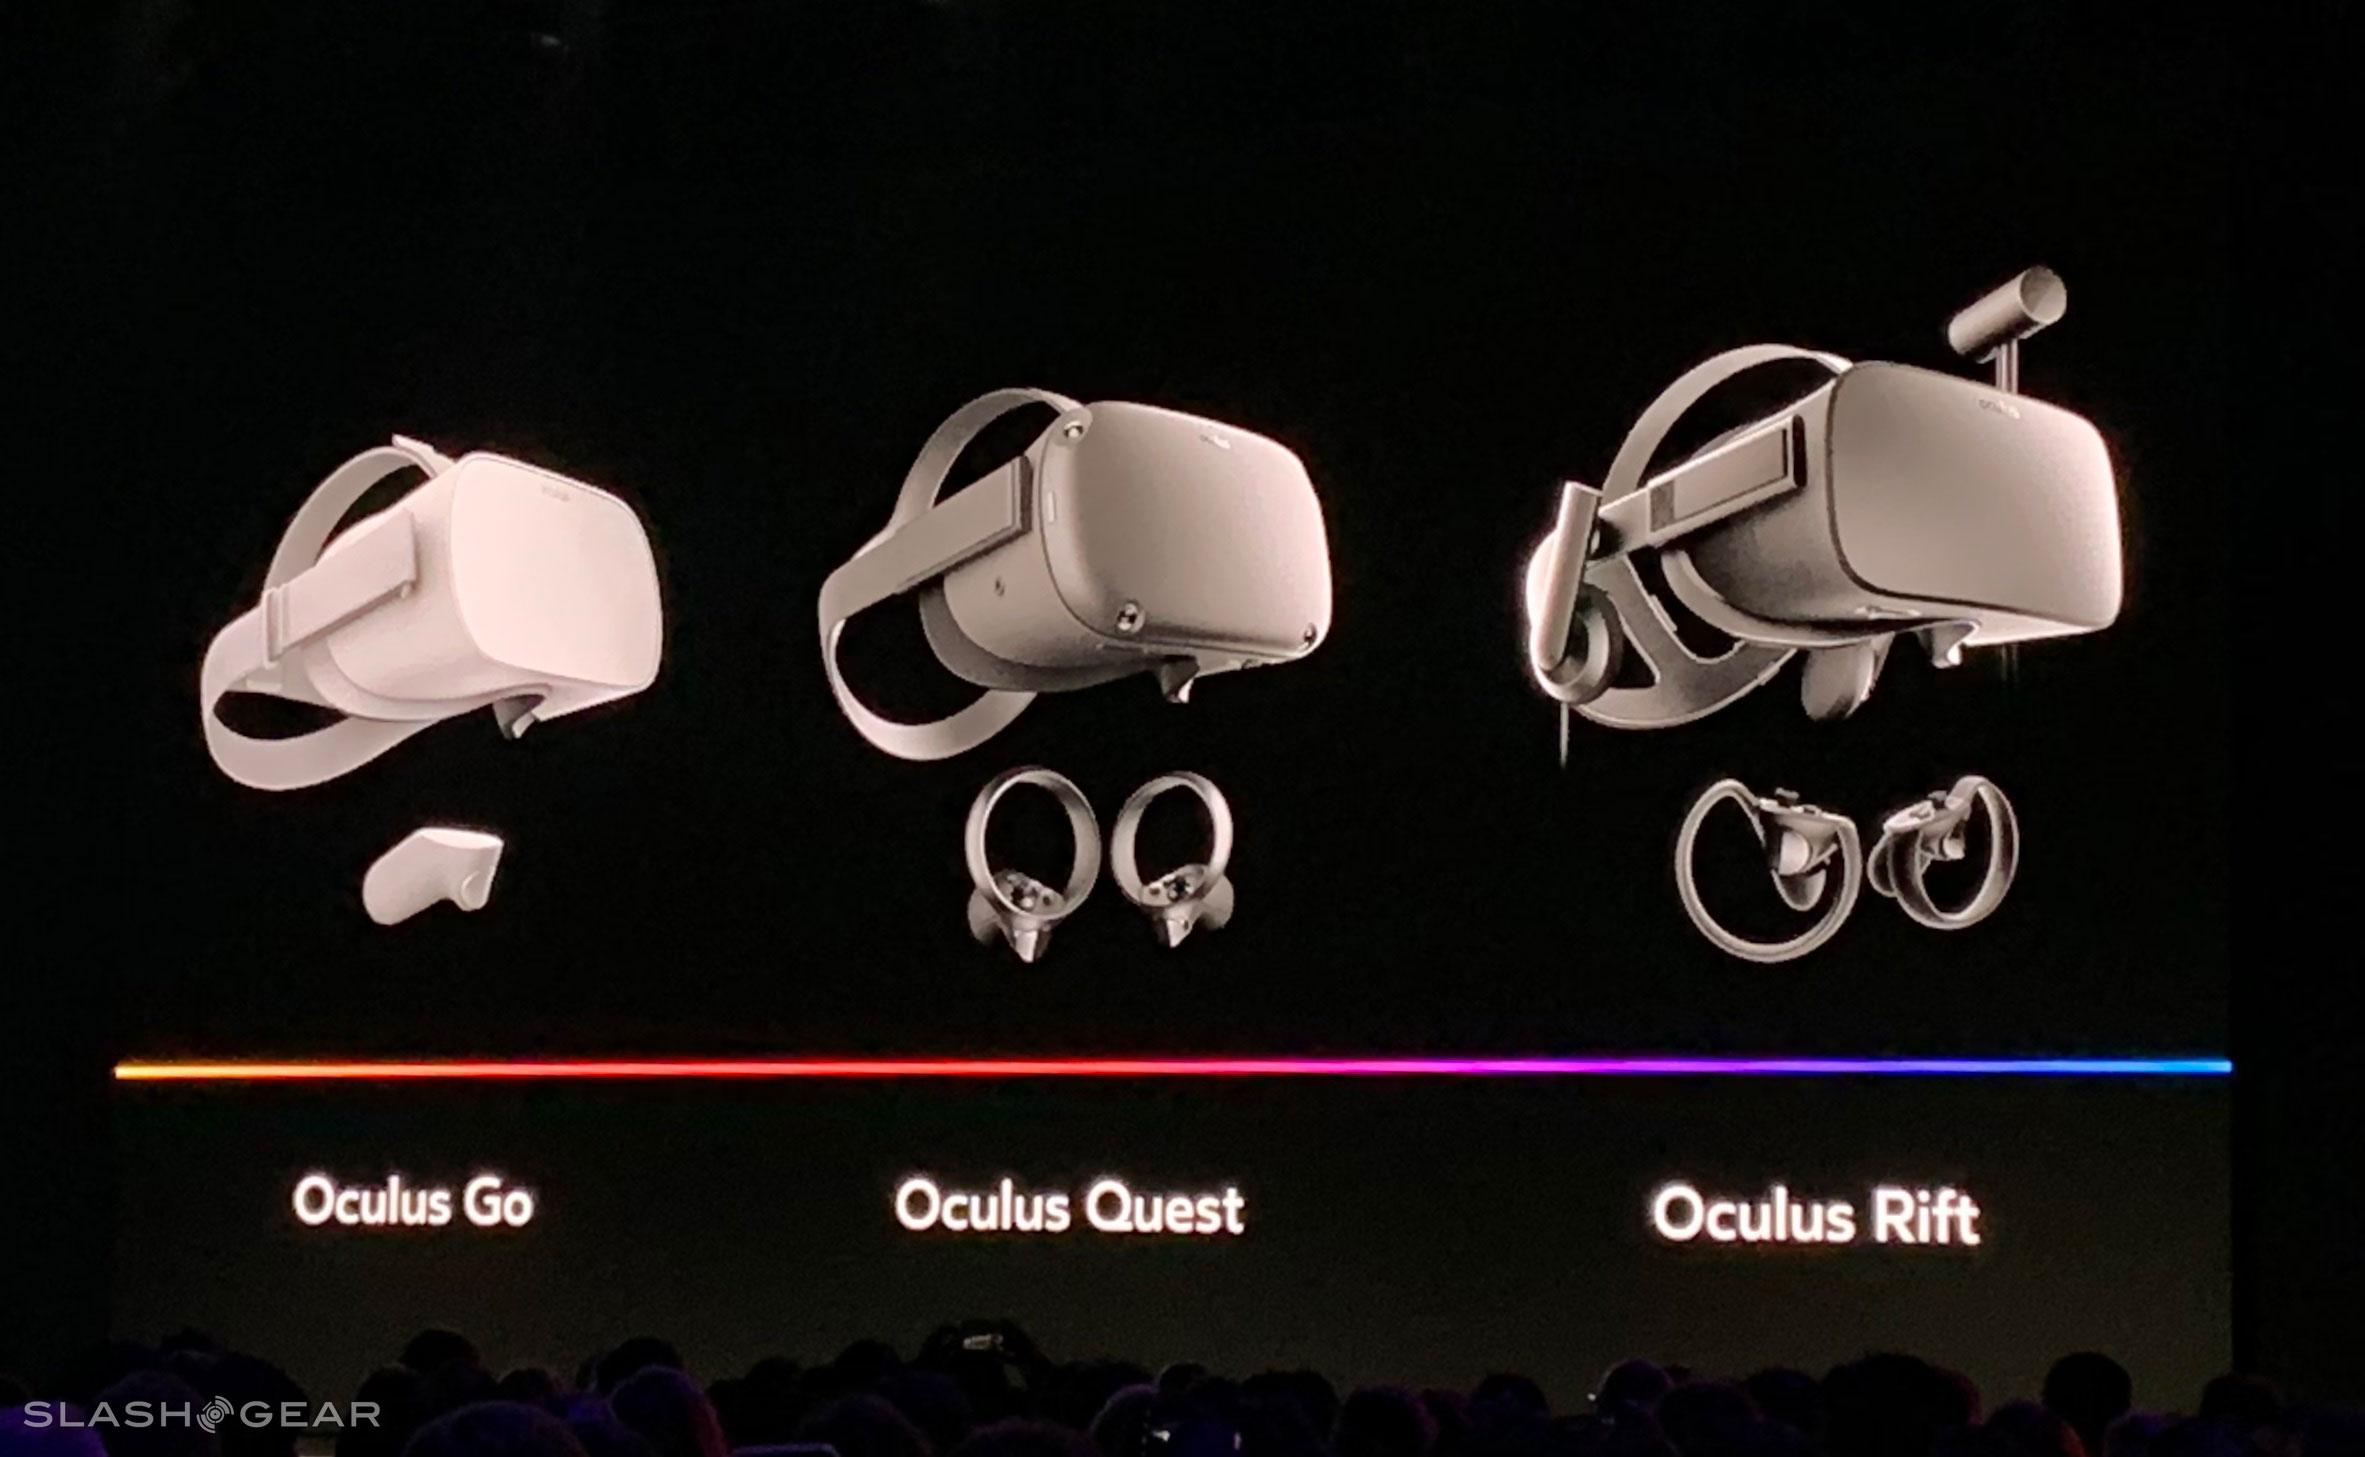 oculus quest price